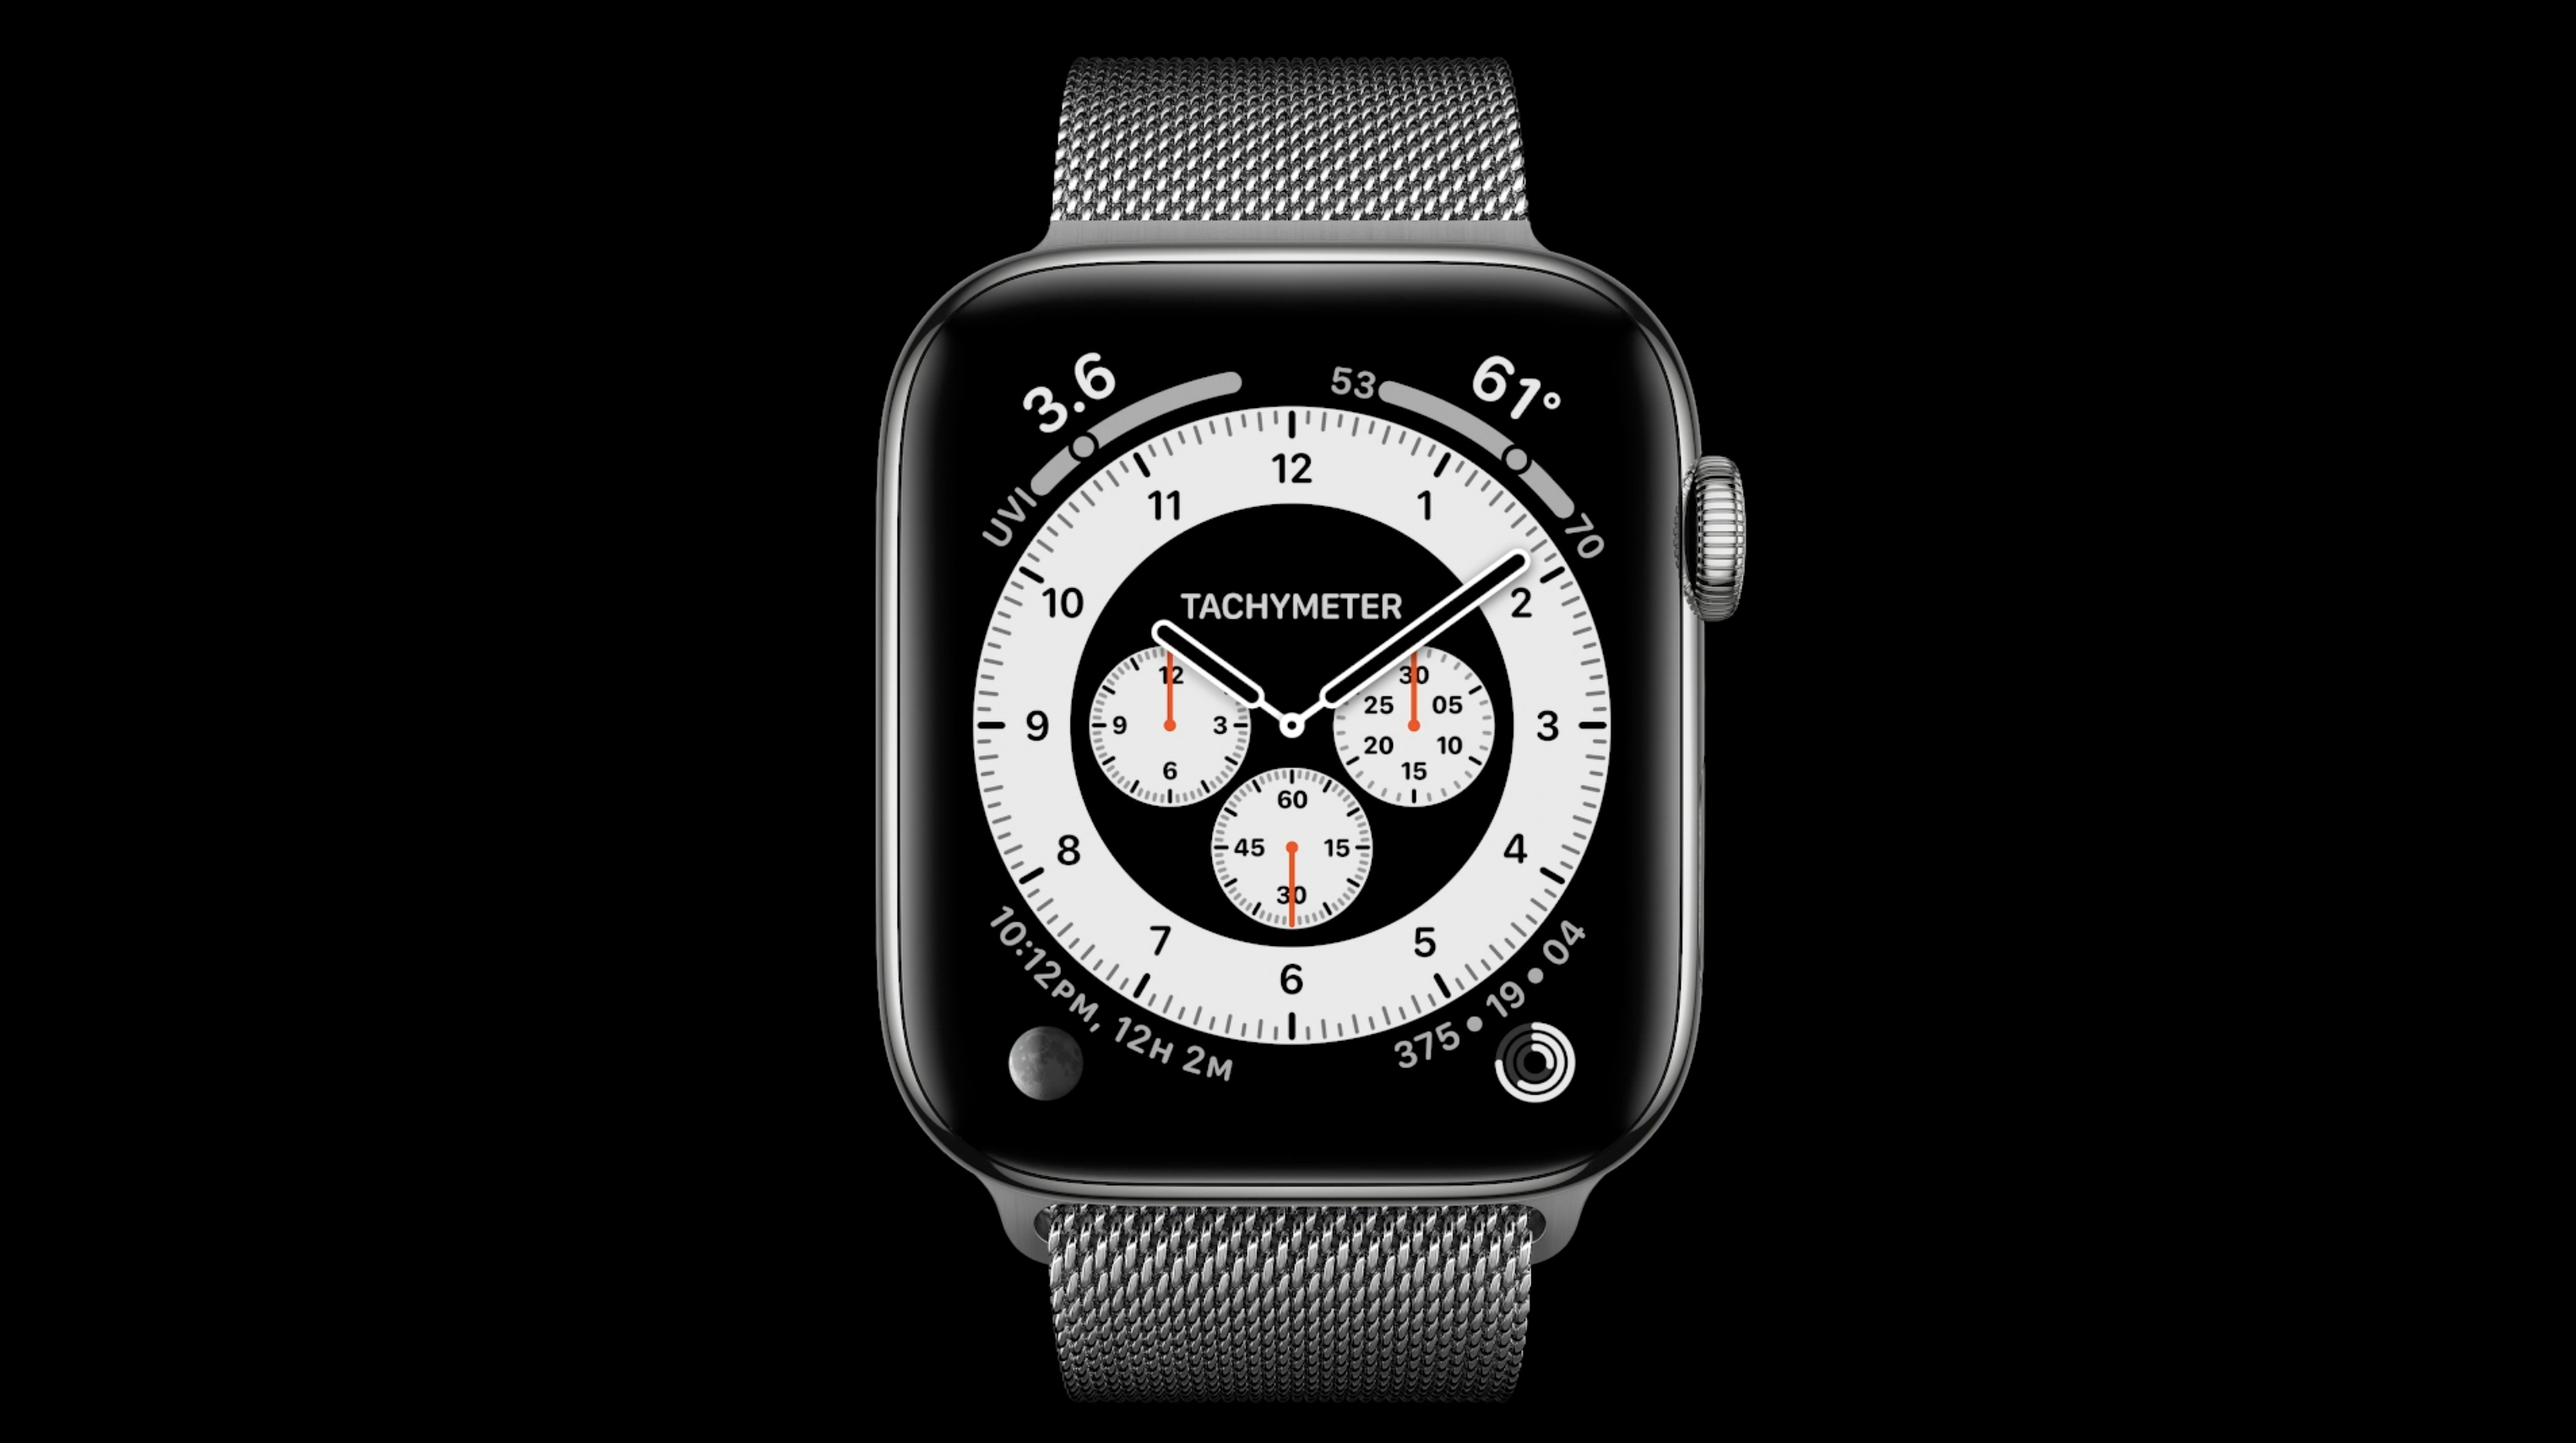 Бесплатная заставка на смарт часы. Циферблат АПЛ вотч 7. Циферблат АПЛ вотч 6. Циферблаты Apple watch Series 7. Циферблат часов эпл вотч 7.